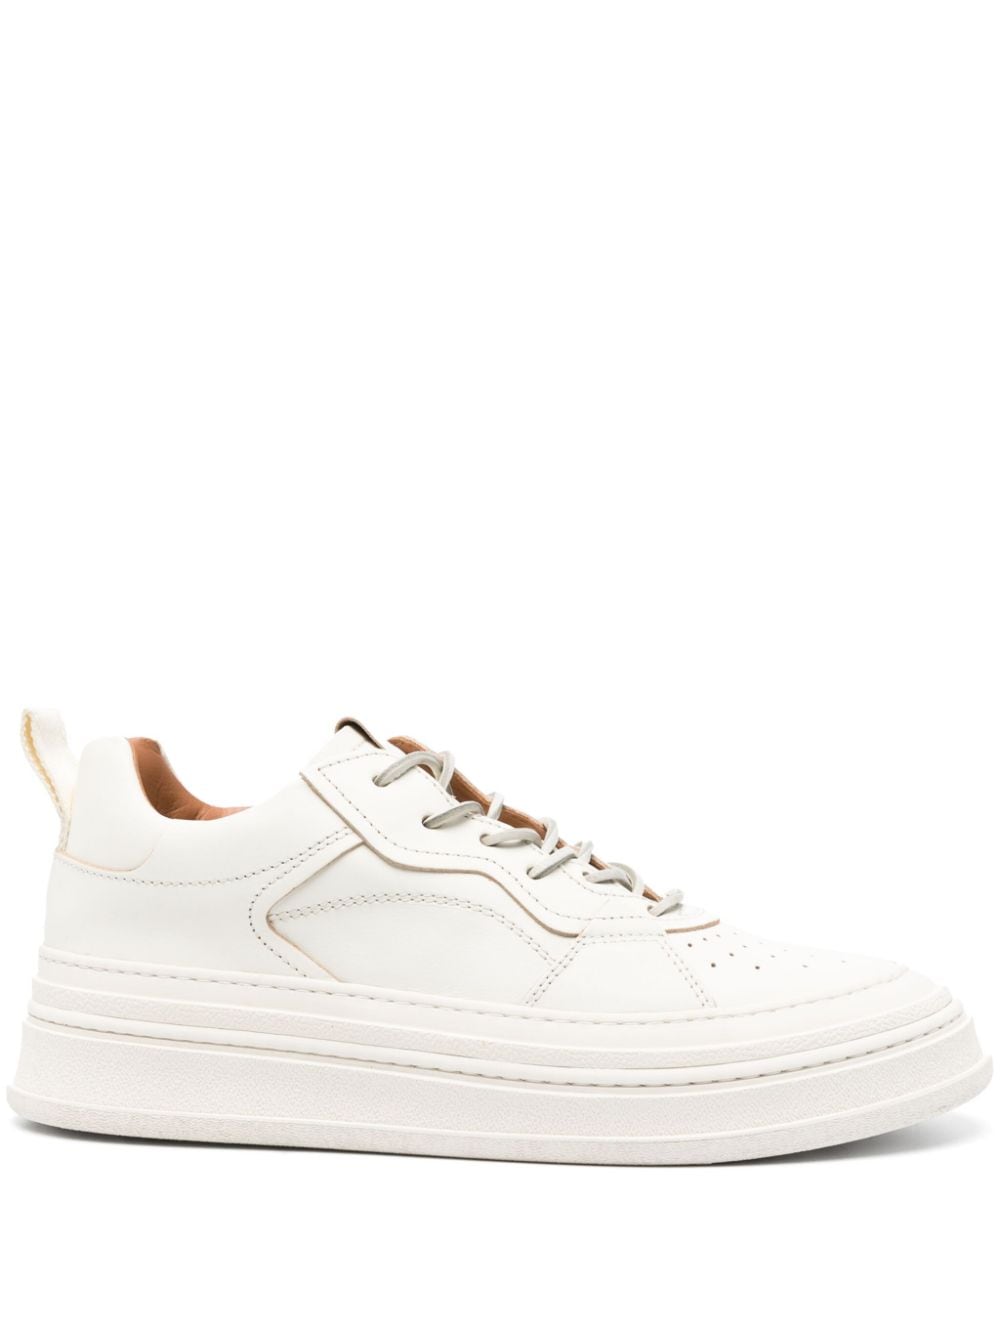 Buttero Circolo leather sneakers - White von Buttero